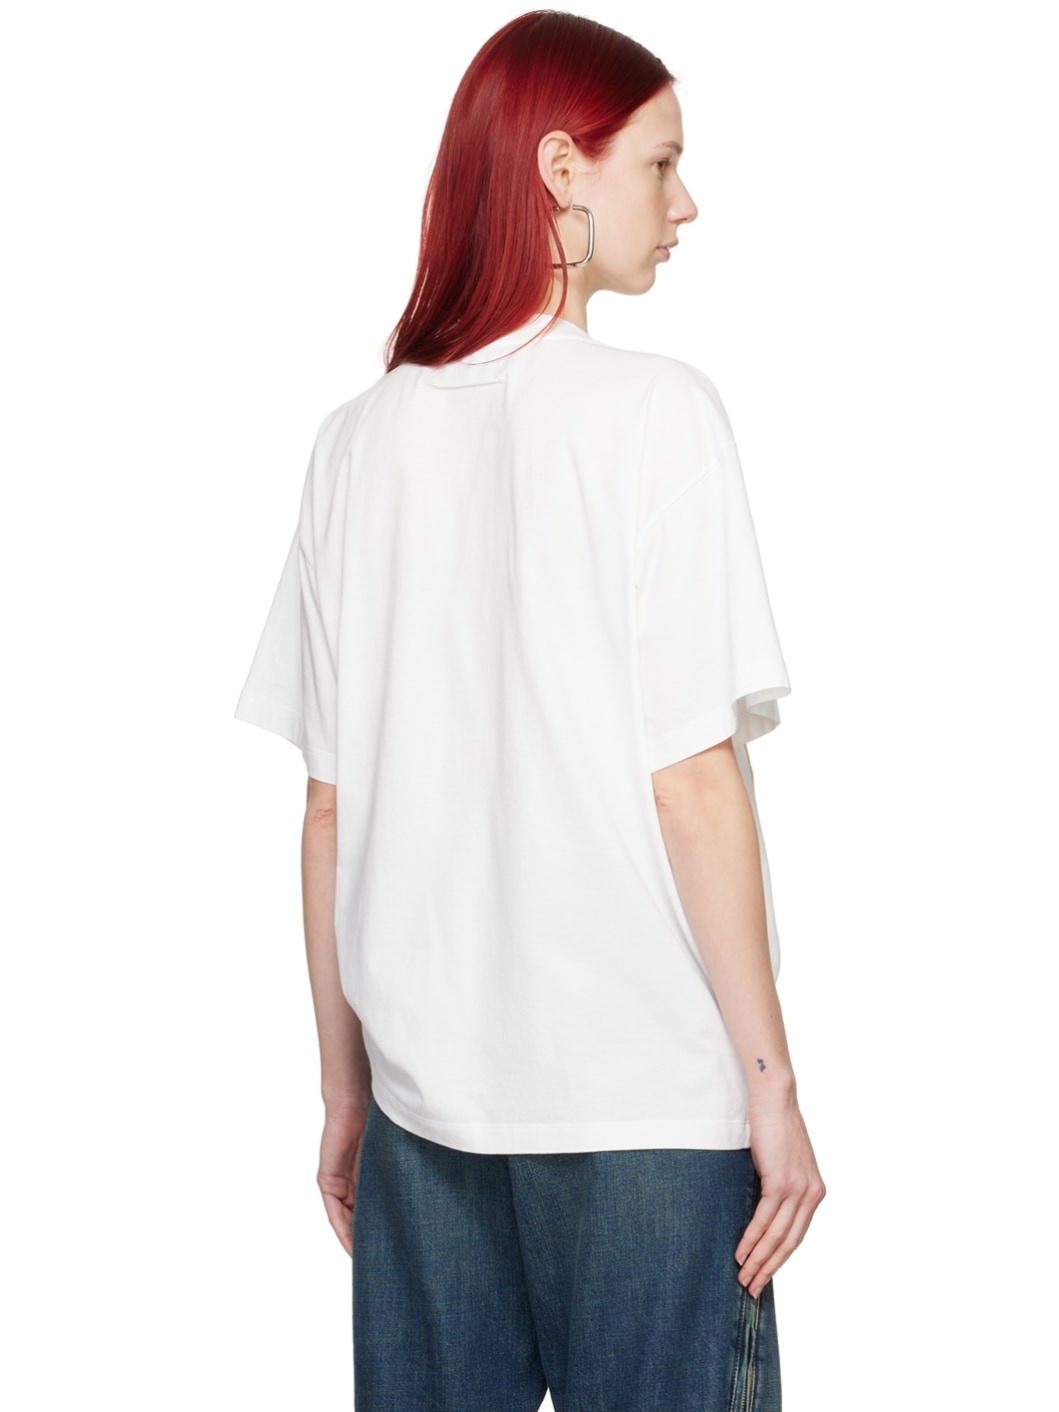 White Basic T-Shirt - 3